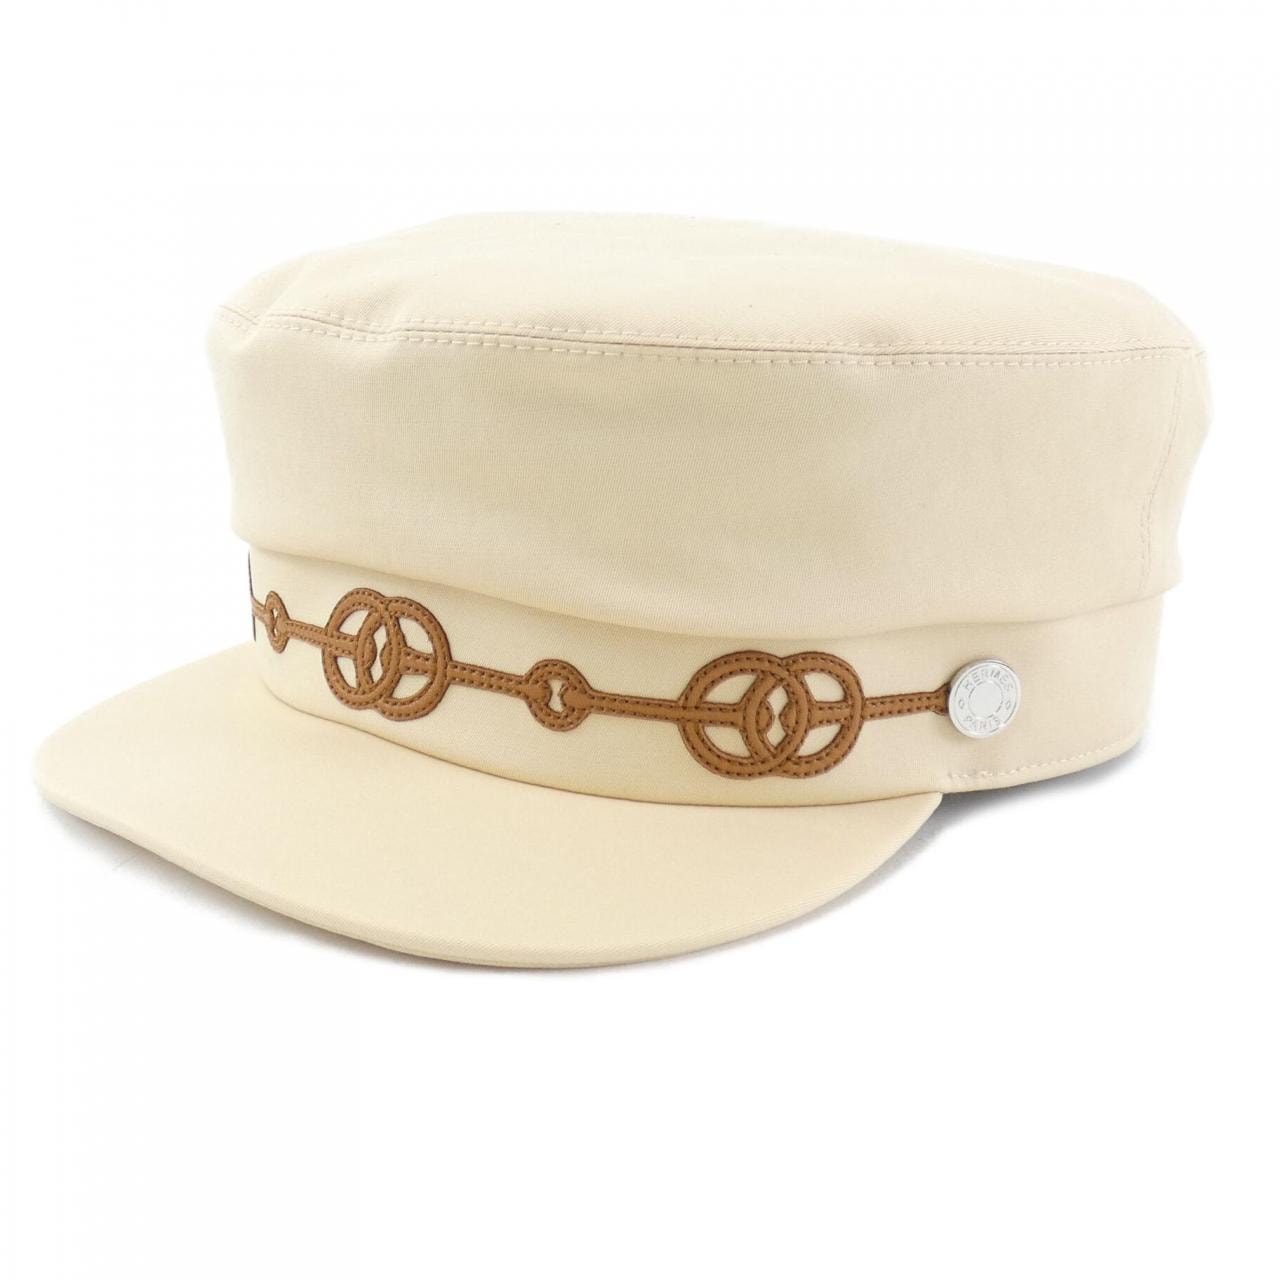 エルメス『Hロゴ バケットハット size56』レディース 帽子